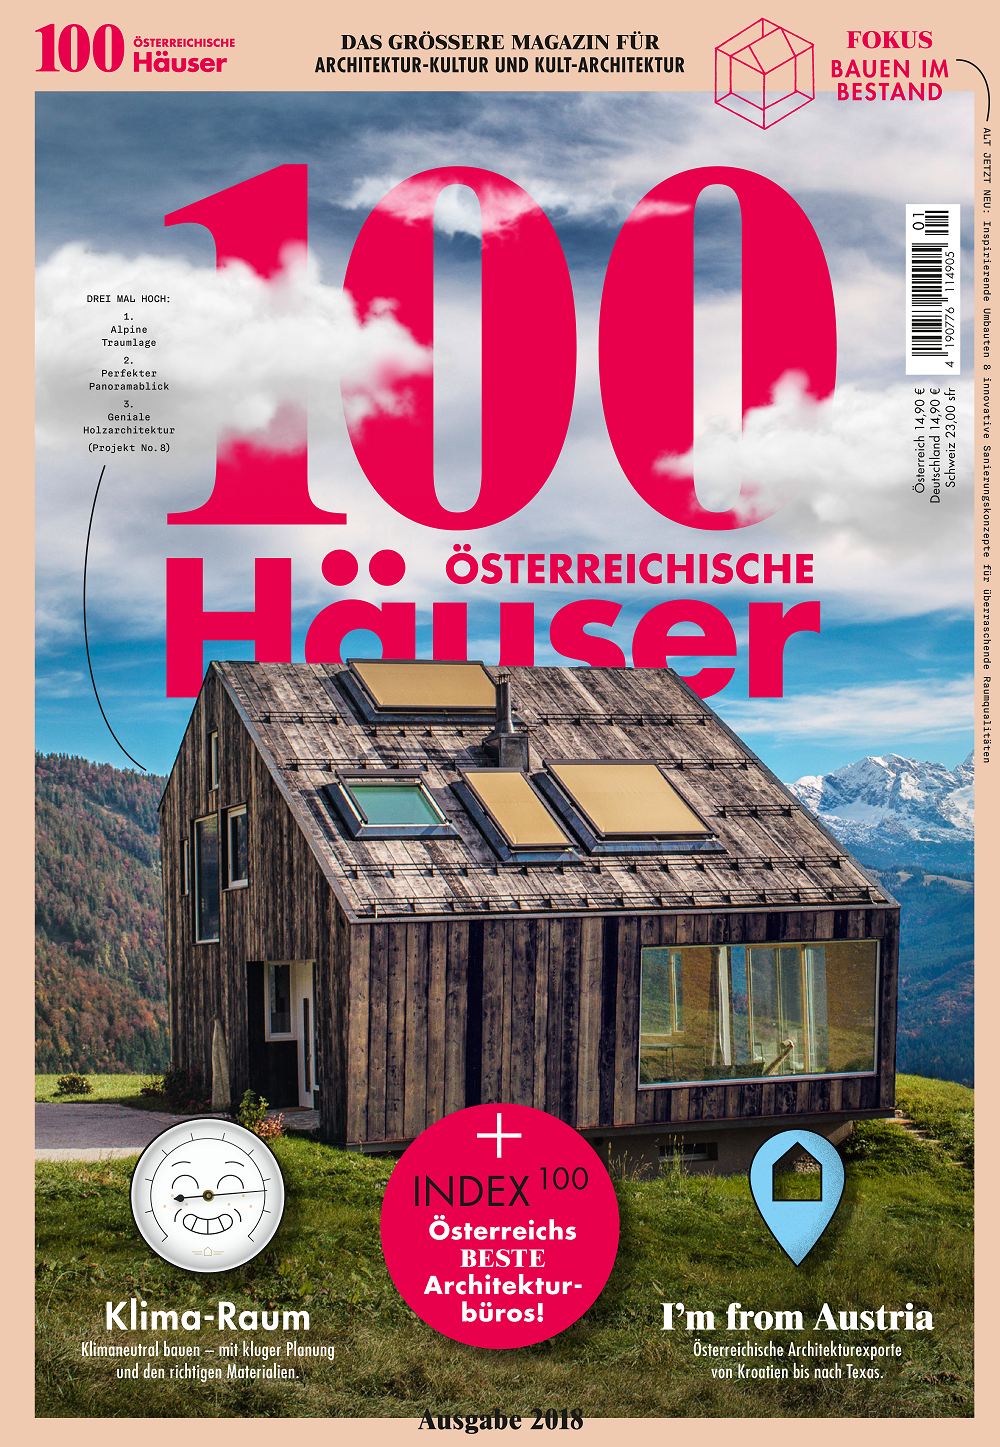 Söhne & Partner Architekten - Cover von 100 Häuser Magazin